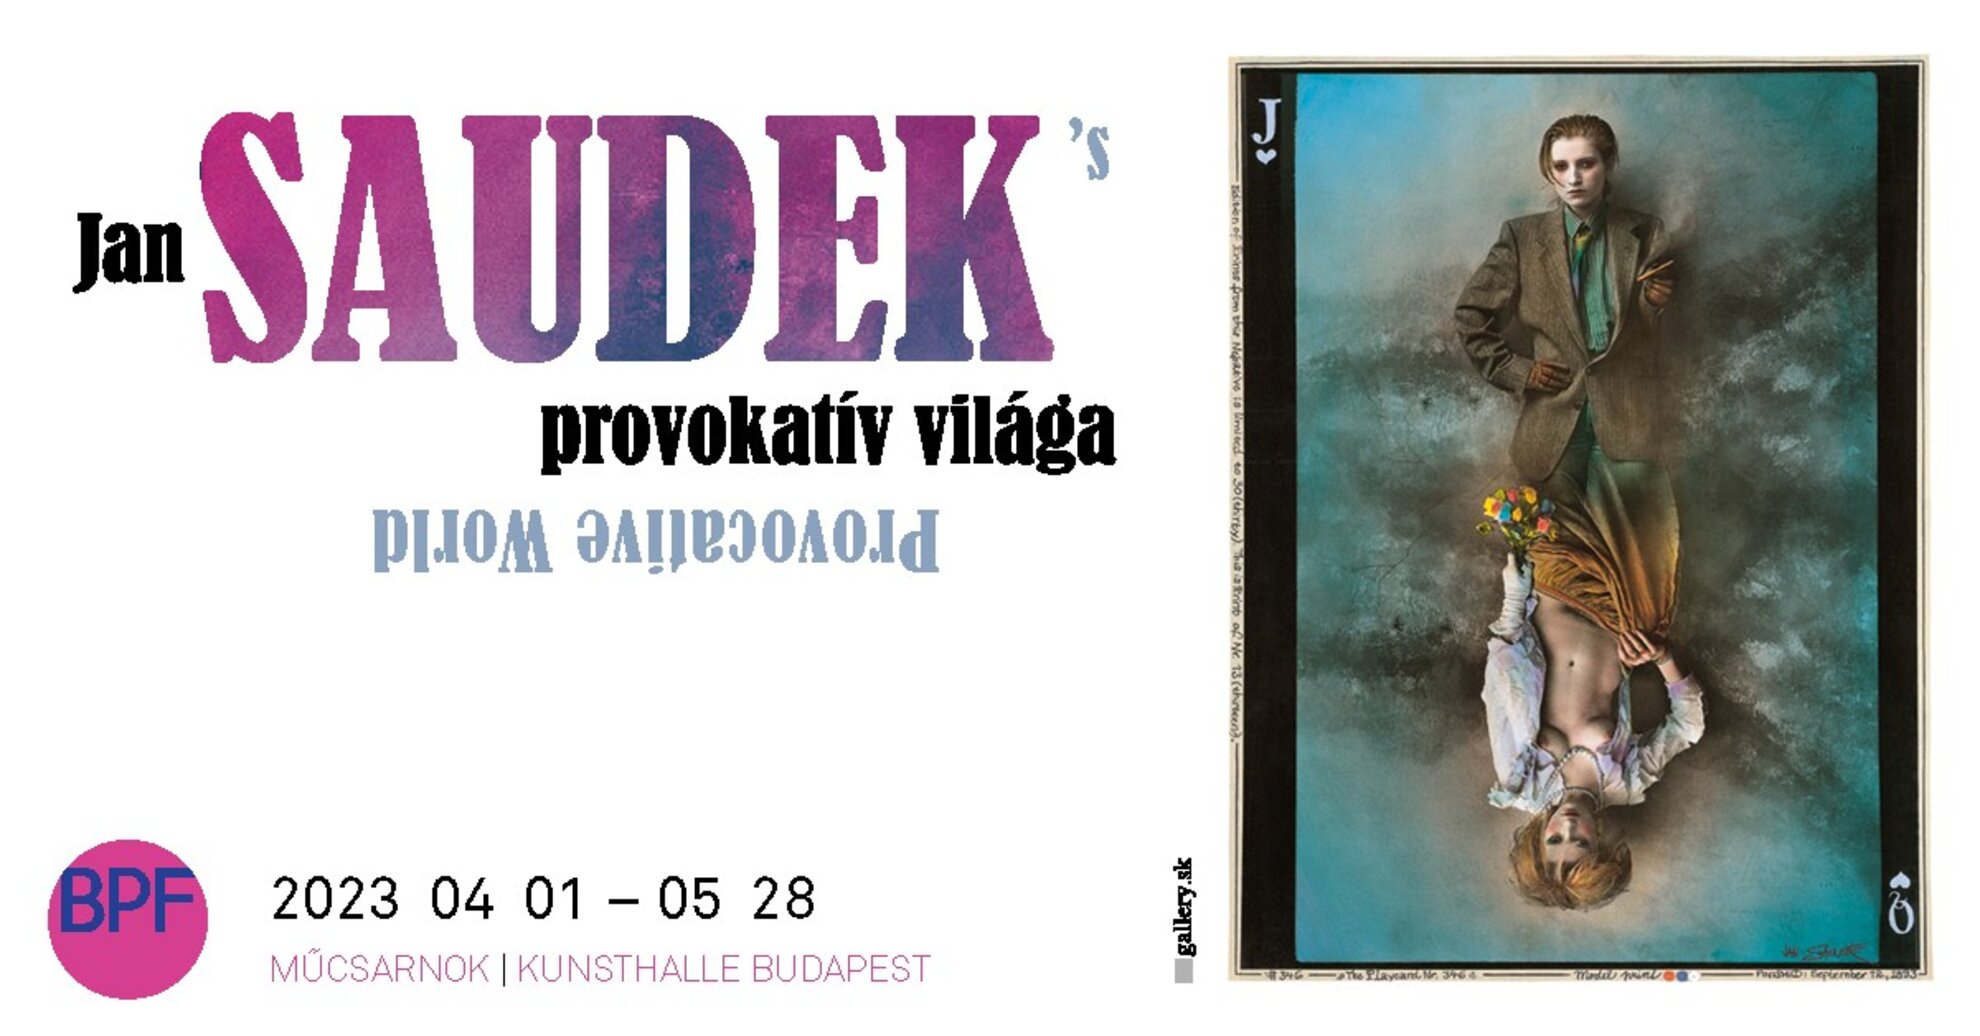 Jan Saudek provokatív világa – a Budapest Fotófesztivál nyitókiállítása